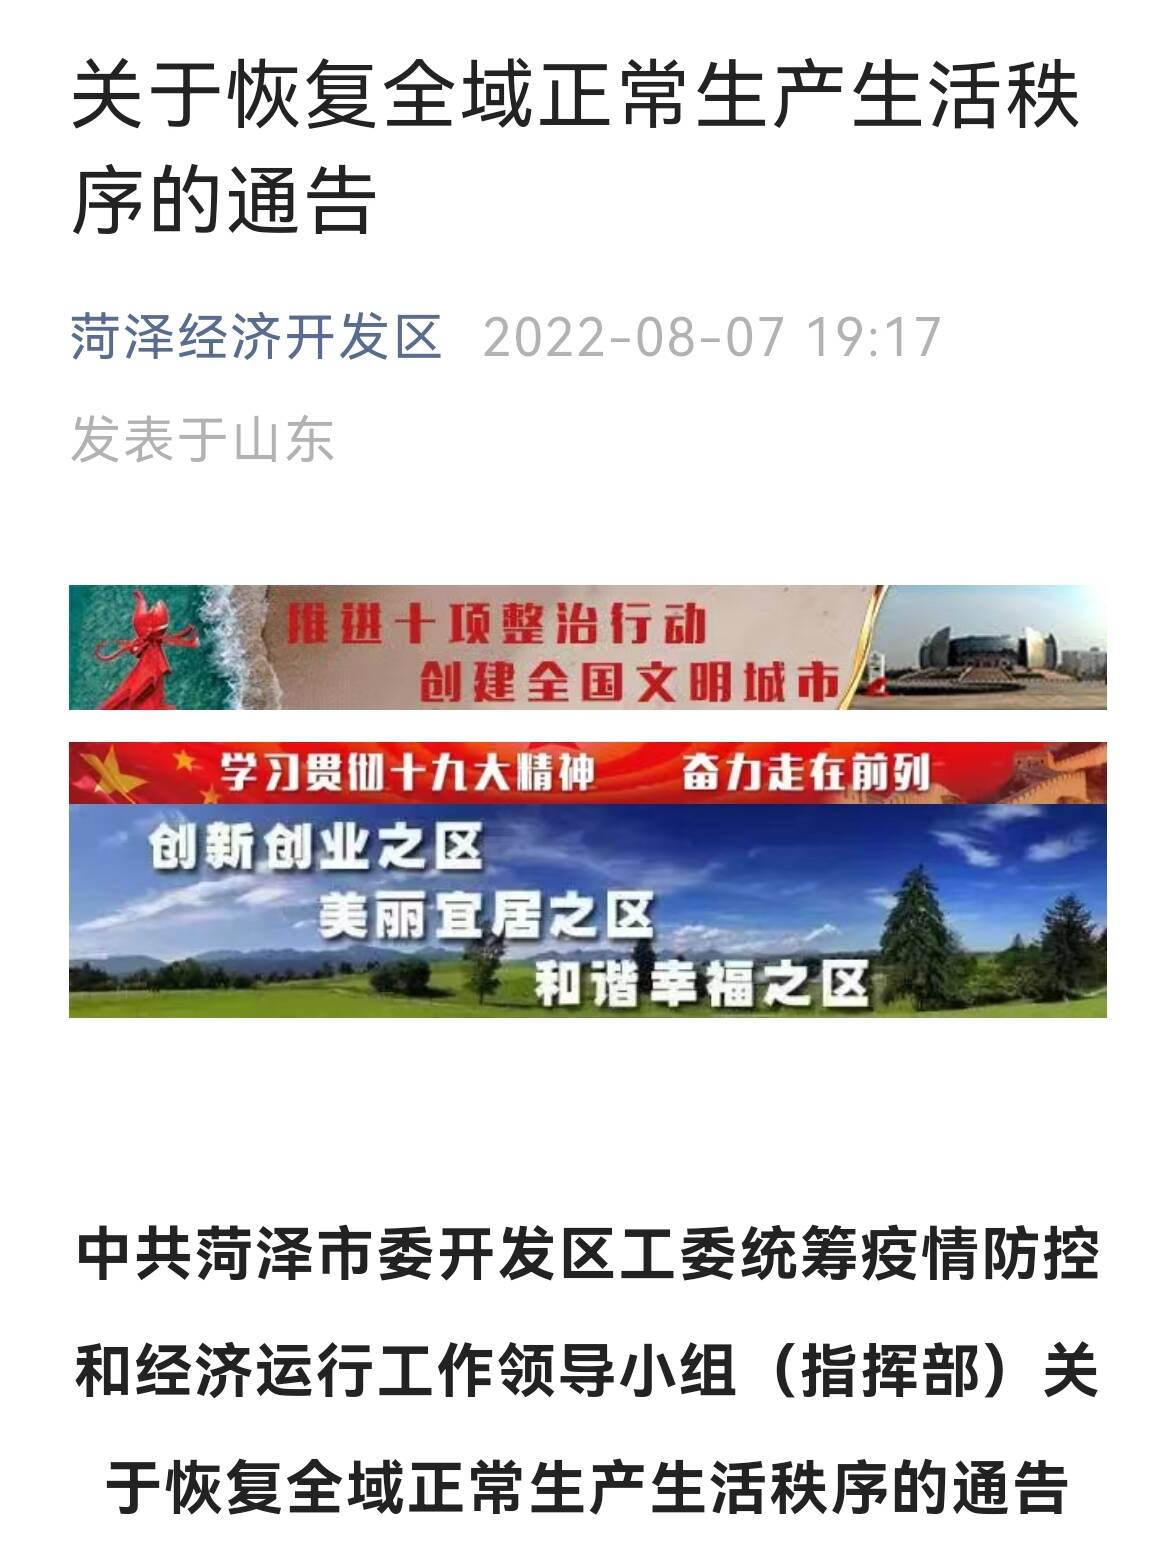 菏泽经济开发区8月8日零时起全域恢复正常生产生活秩序